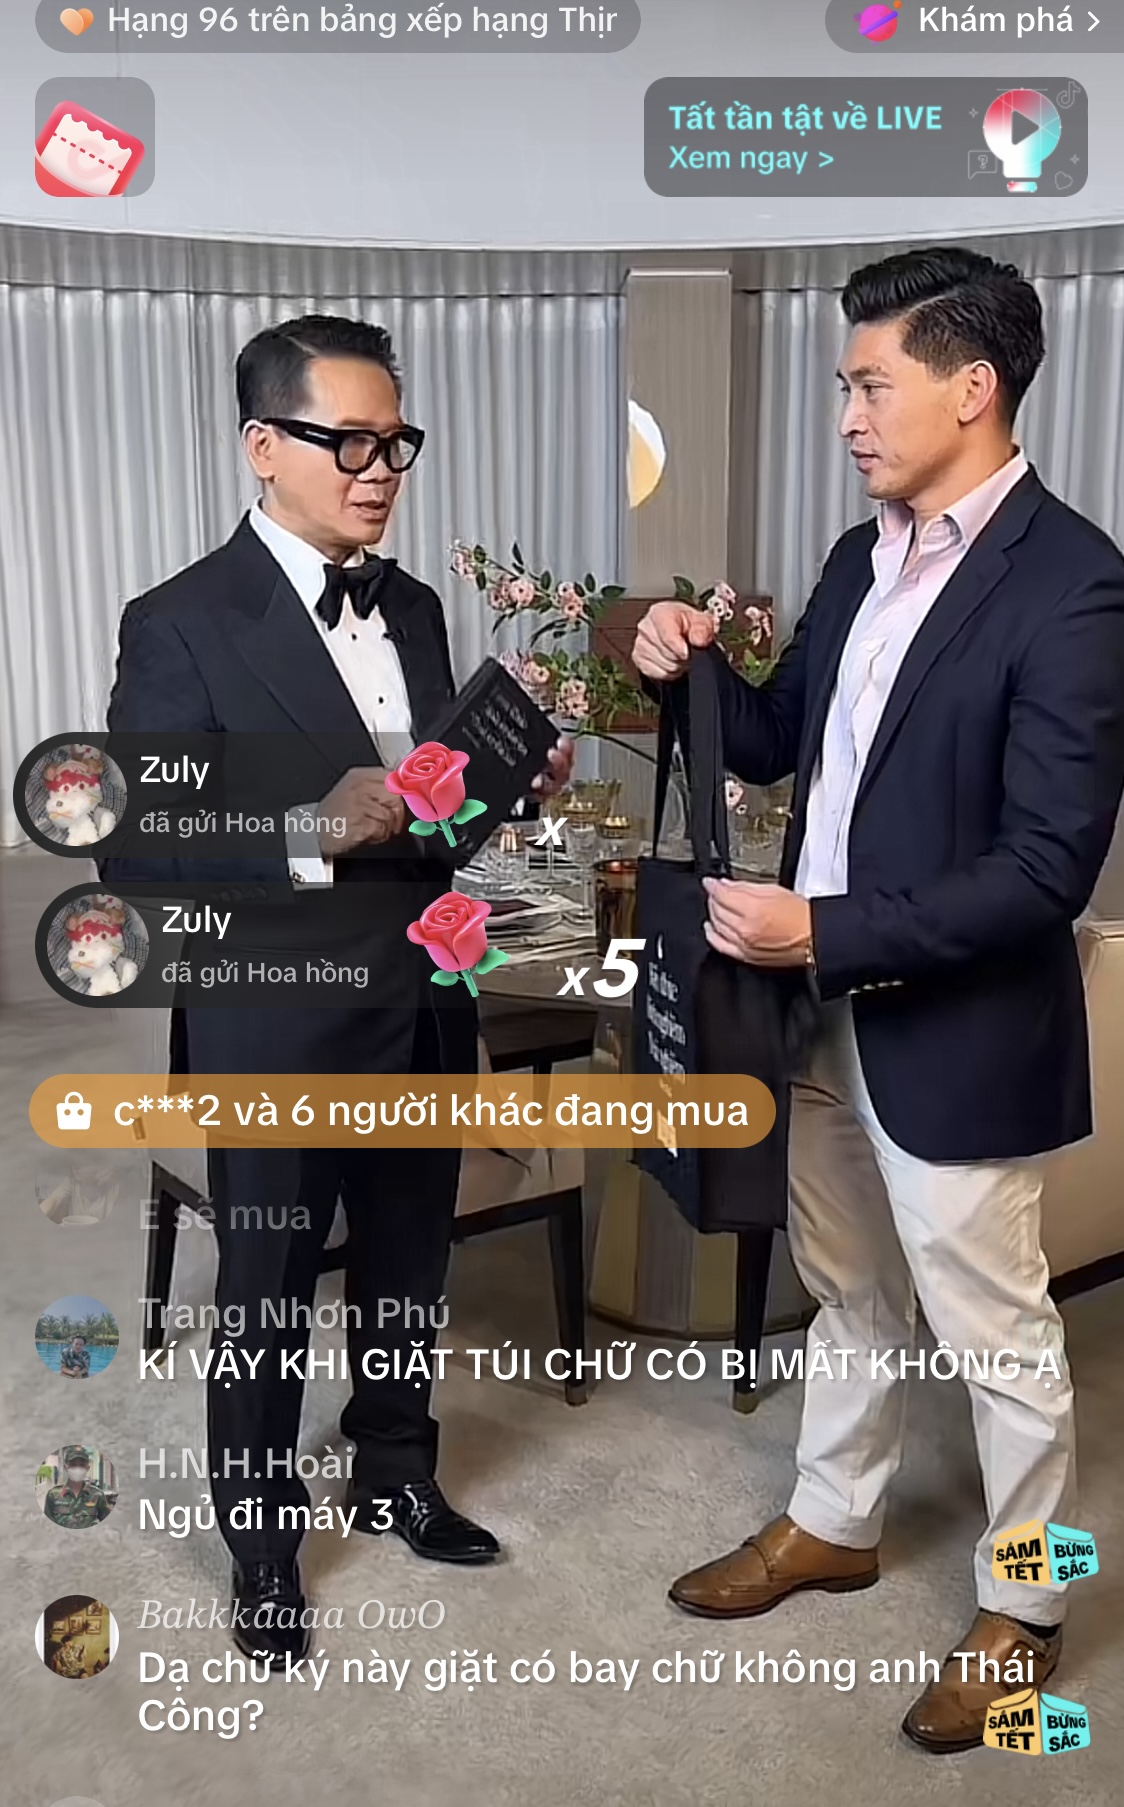 Phiên livestream thứ 2, NTK Thái Công tiếp tục giới thiệu ‘cuộc sống thượng lưu đồng đều từ A - Z, như việc mặc bộ âu phục thì không thể tới nhà hàng bình thường hay đi chợ!’ - Ảnh 3.